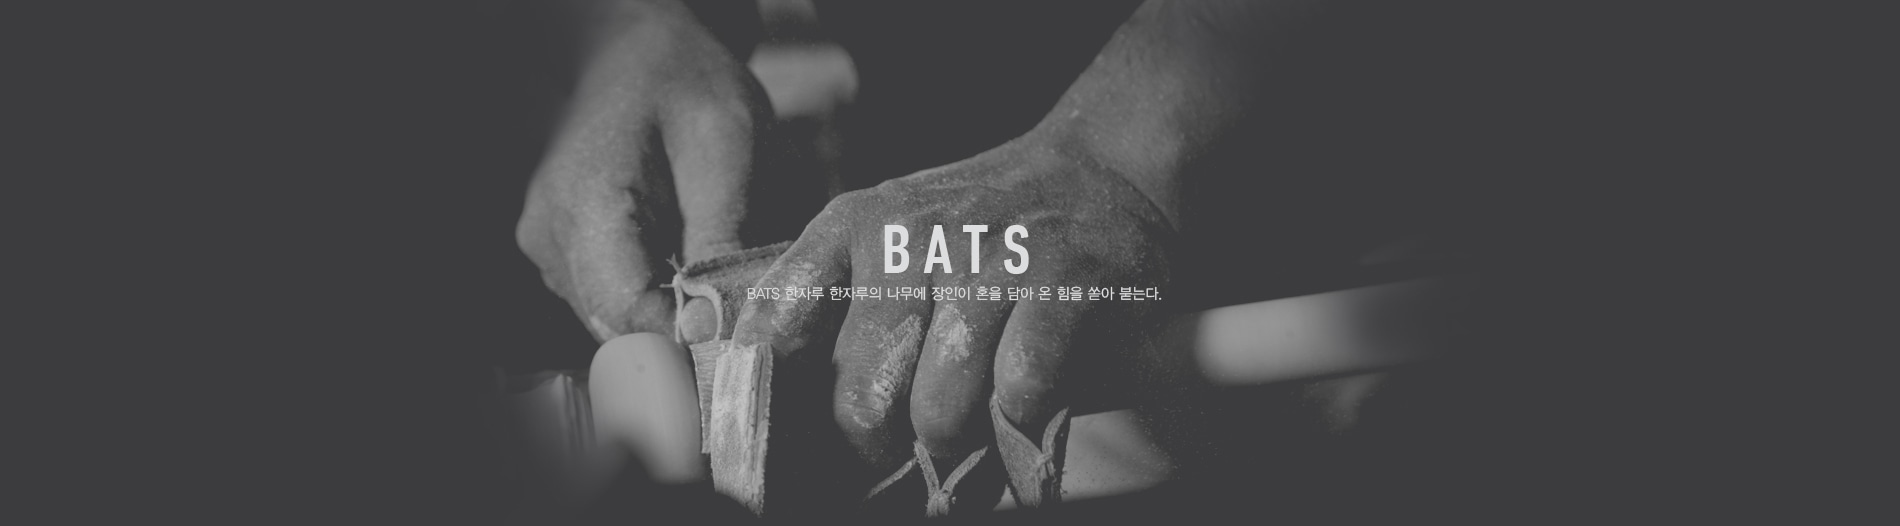 BATS